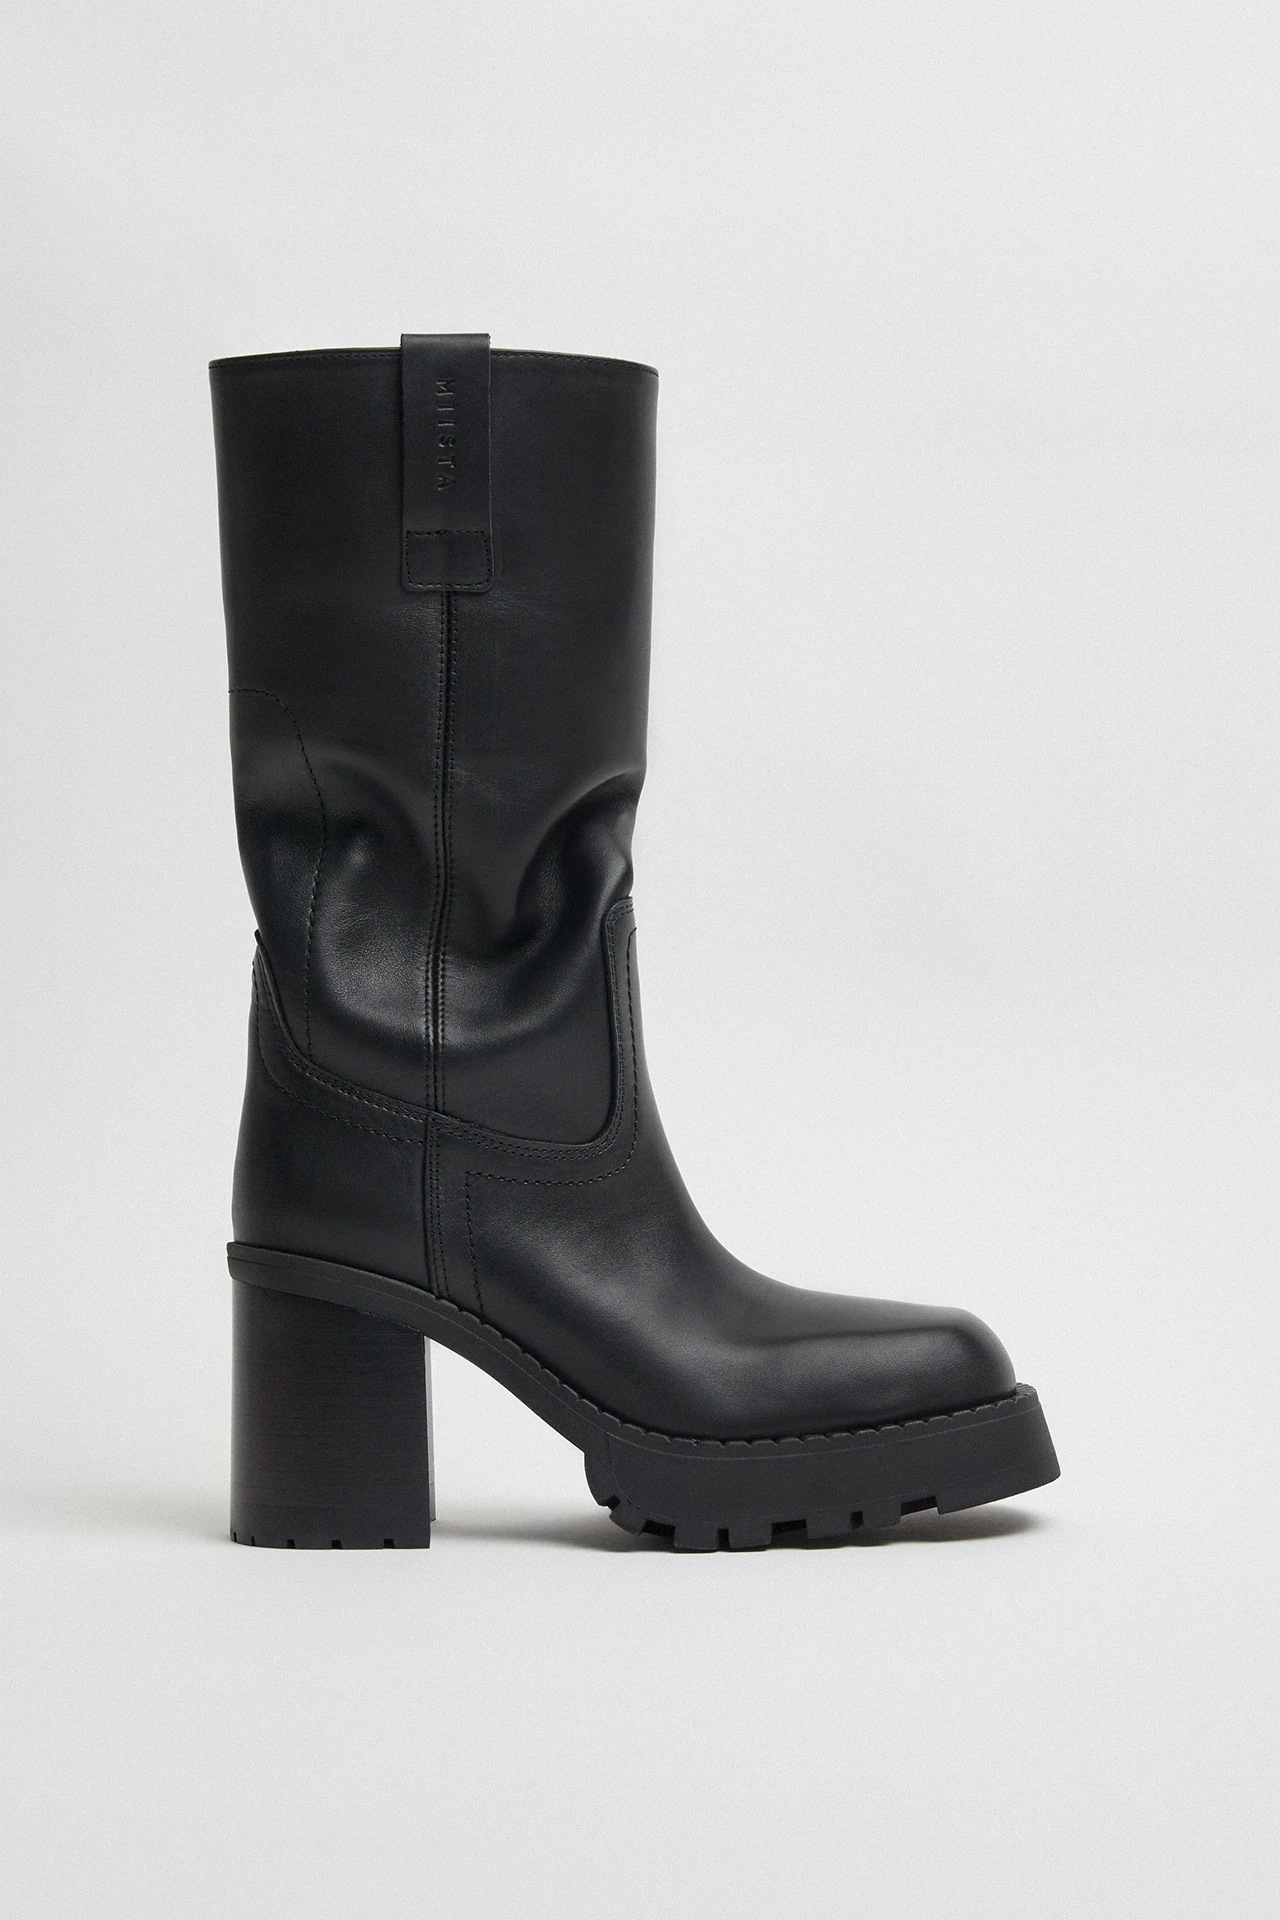 E8-dionira-black-tall-boots-01